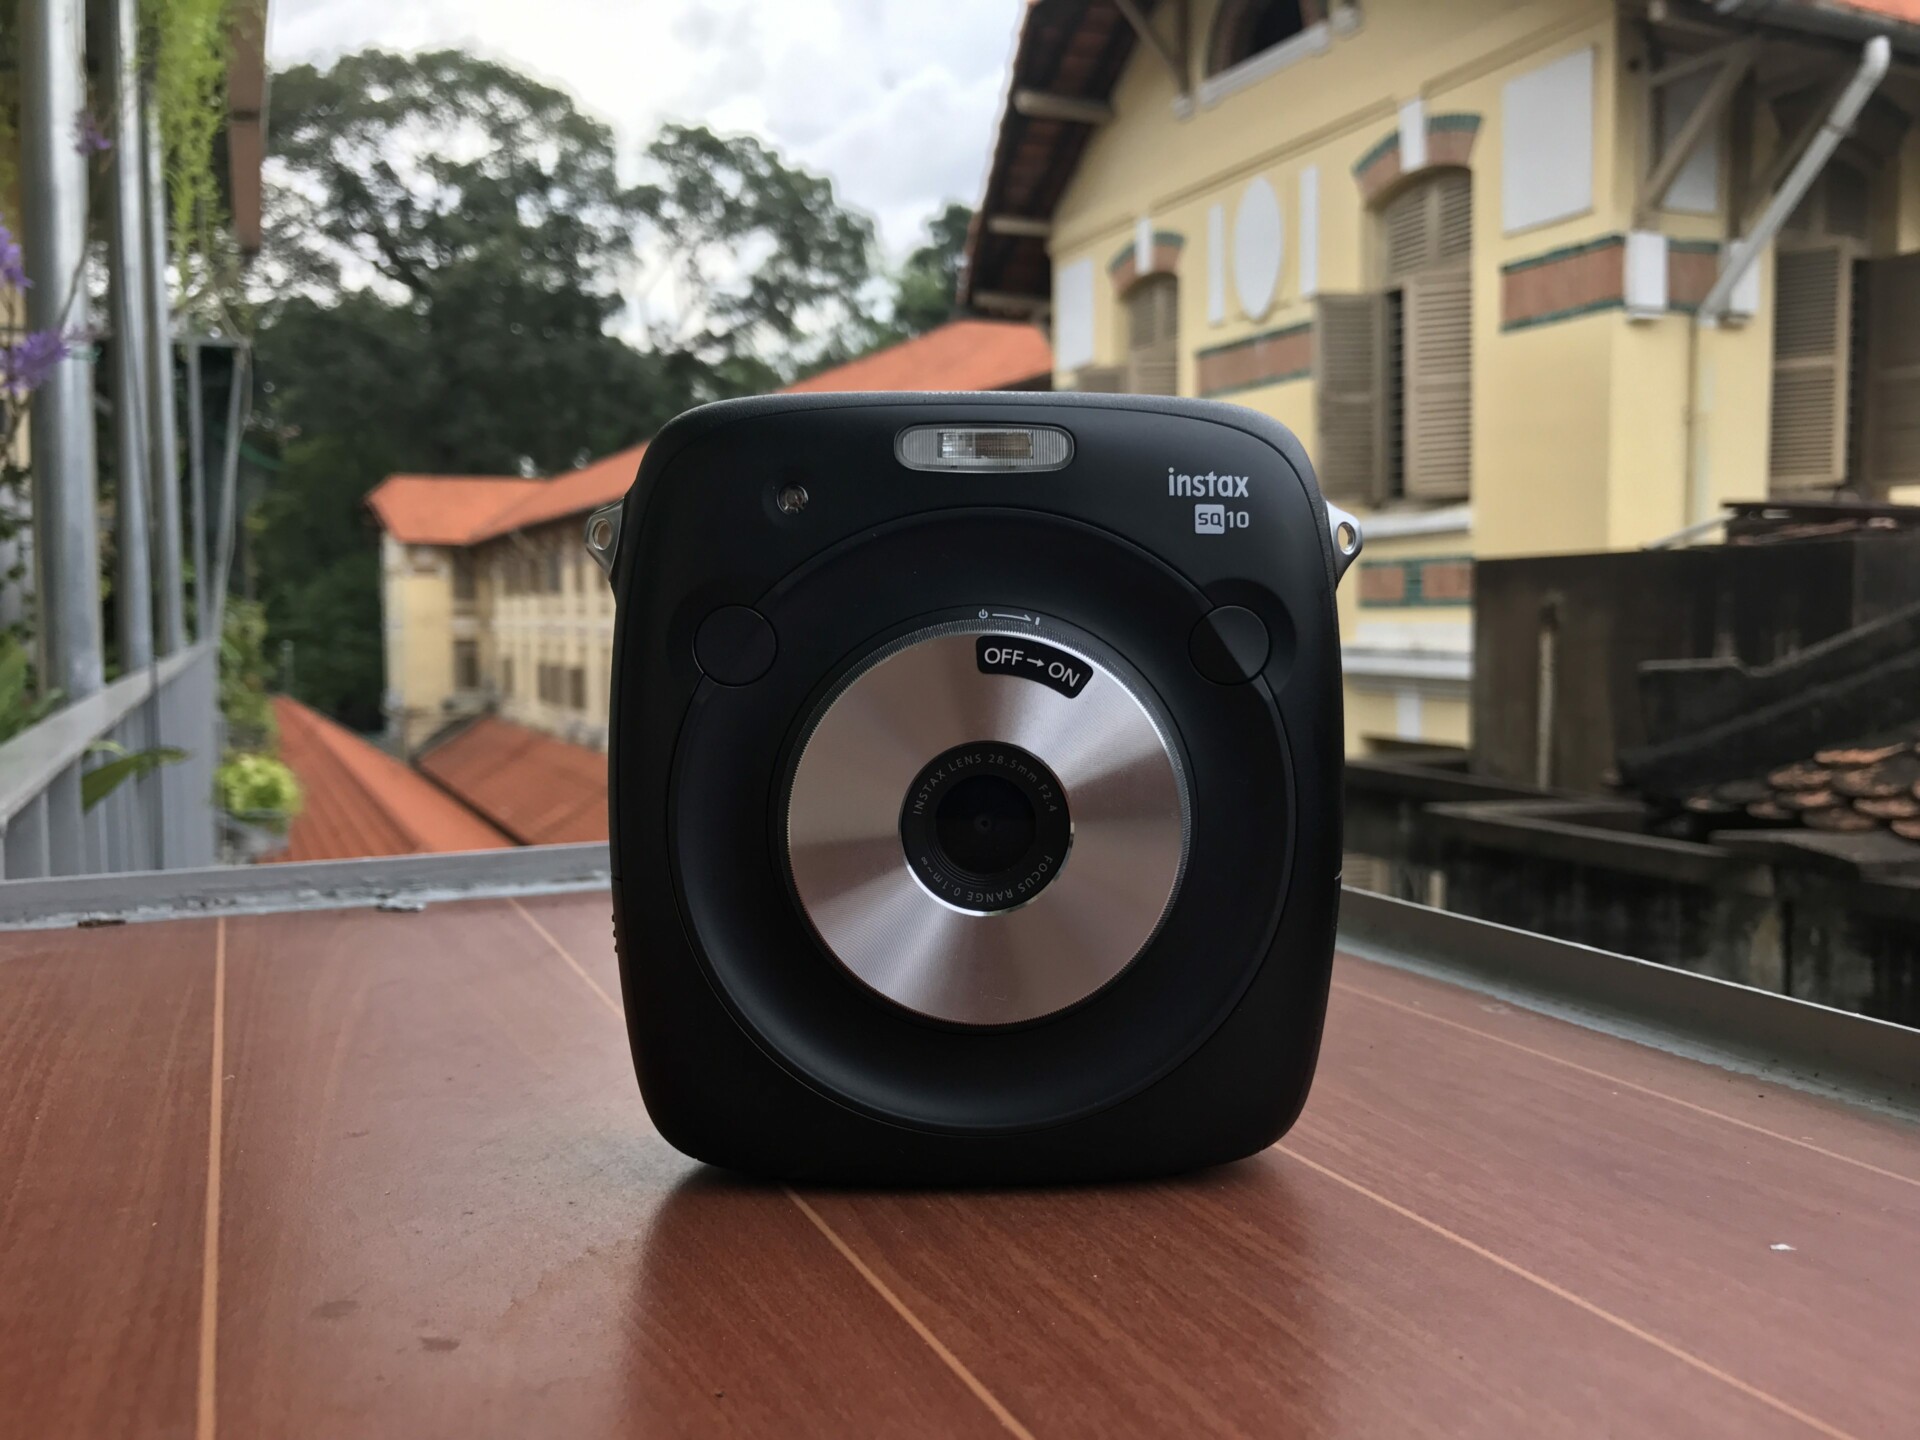 Trên tay Fujifilm Instax SQ10, máy ảnh in liền có gì hay?